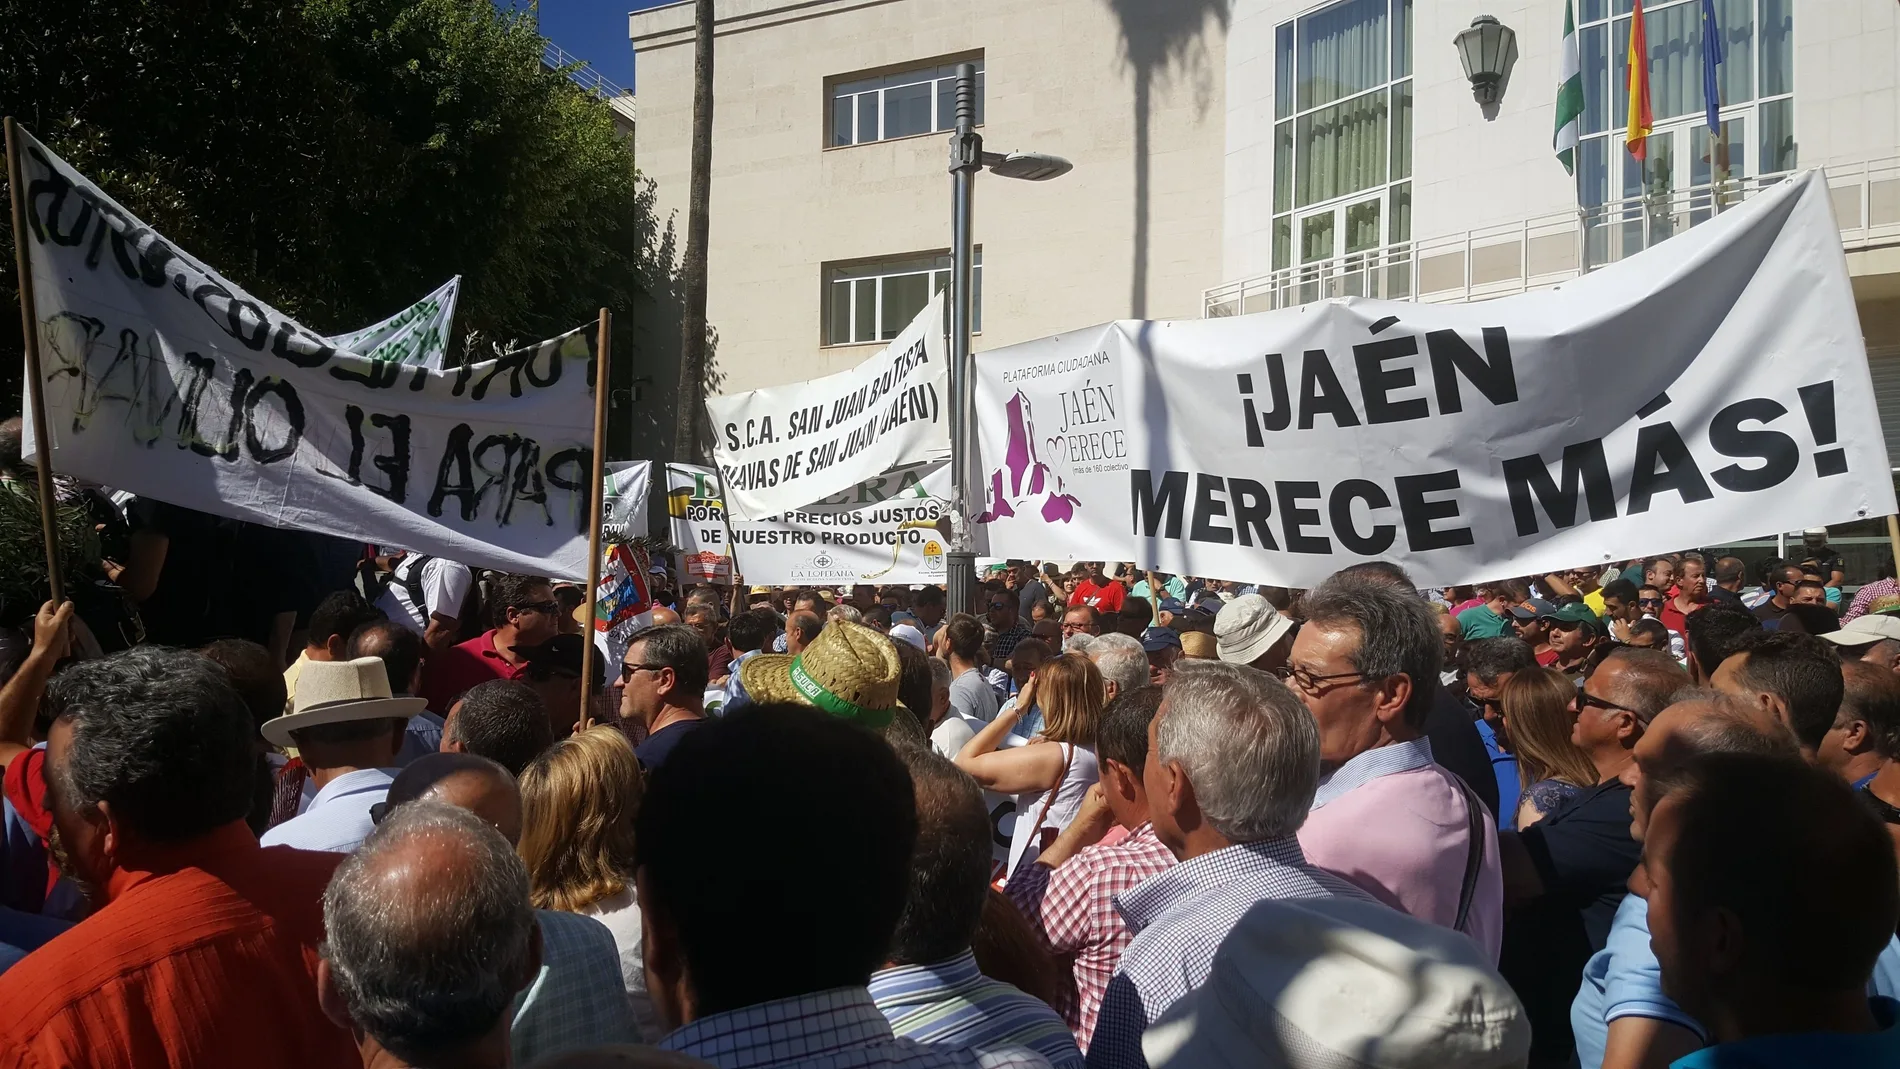 La plataforma «Jaén merece más» nació hace cinco años para reclamar más inversión pública en la provincia